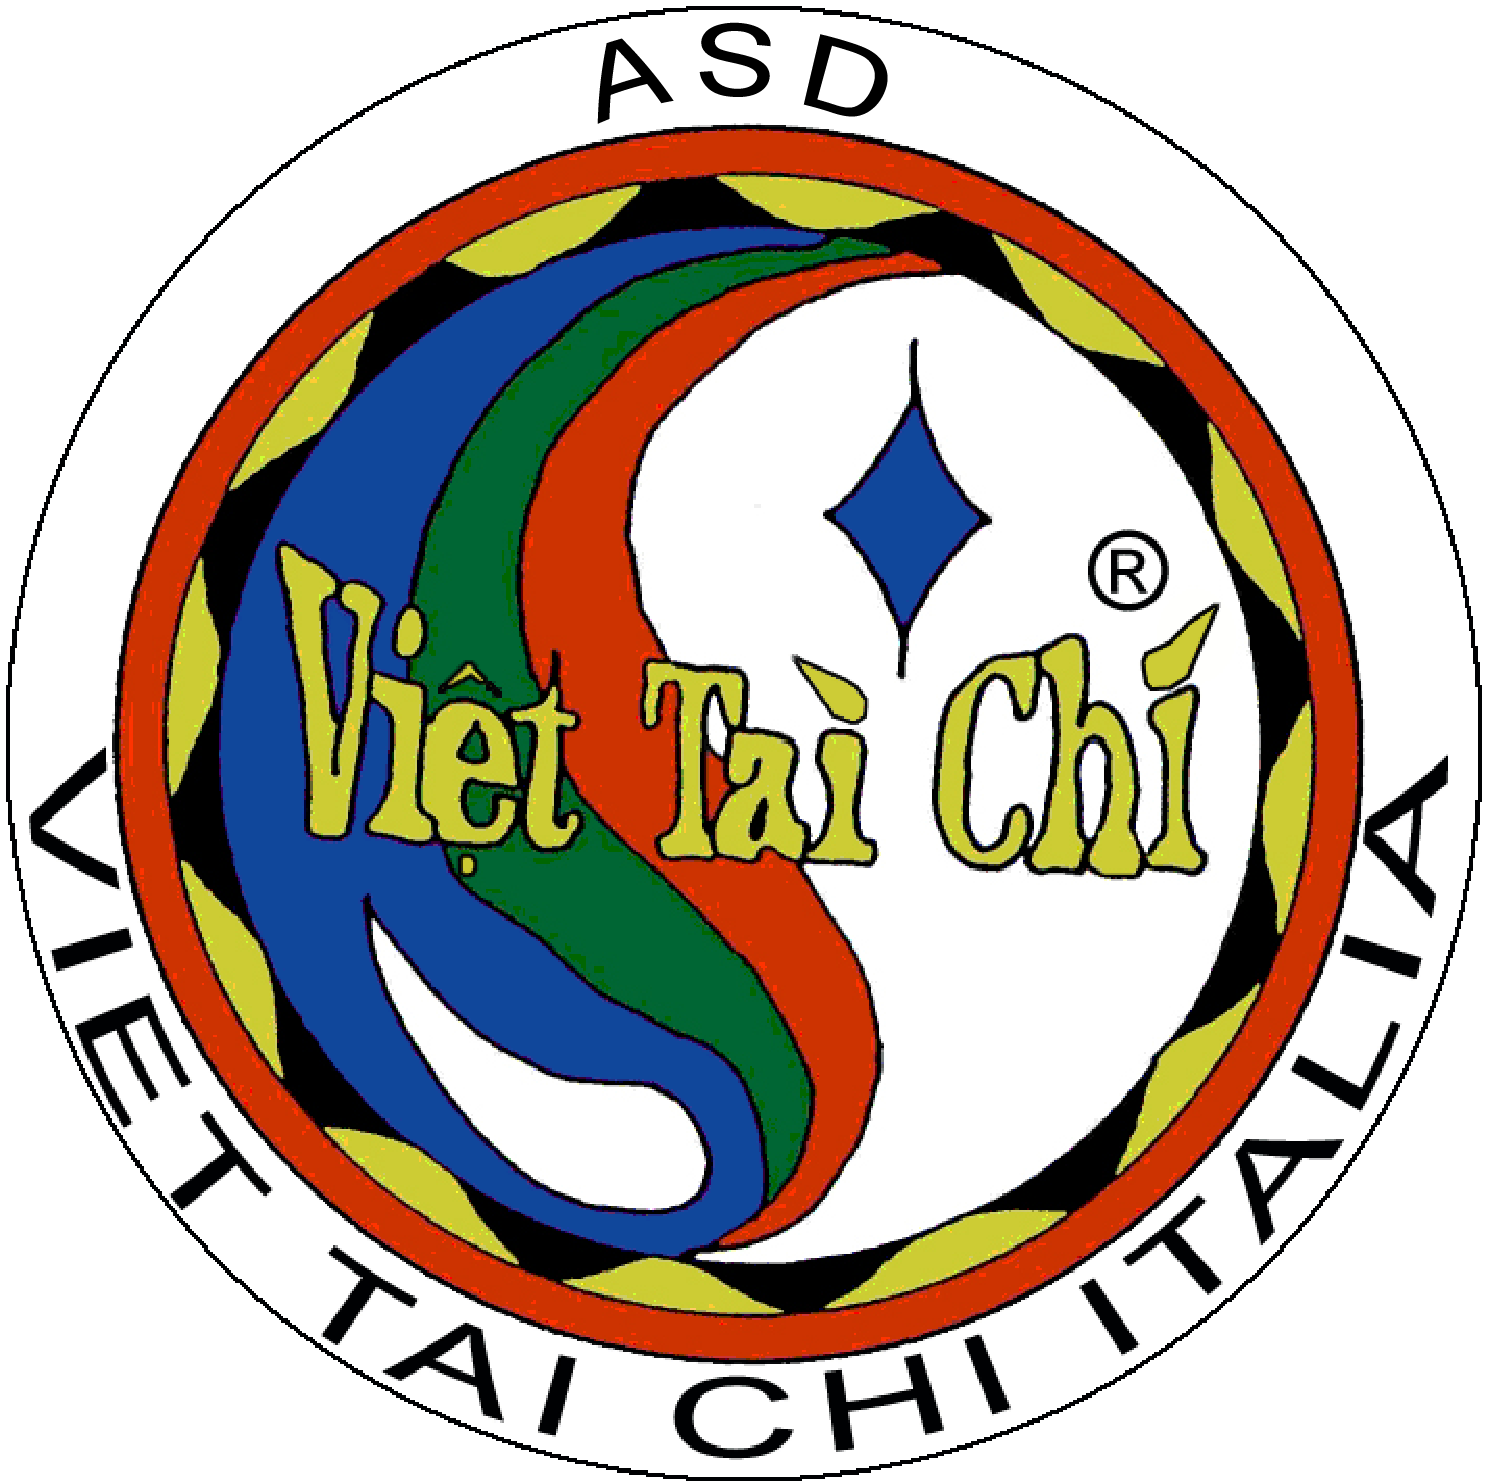 VTC logo ASD